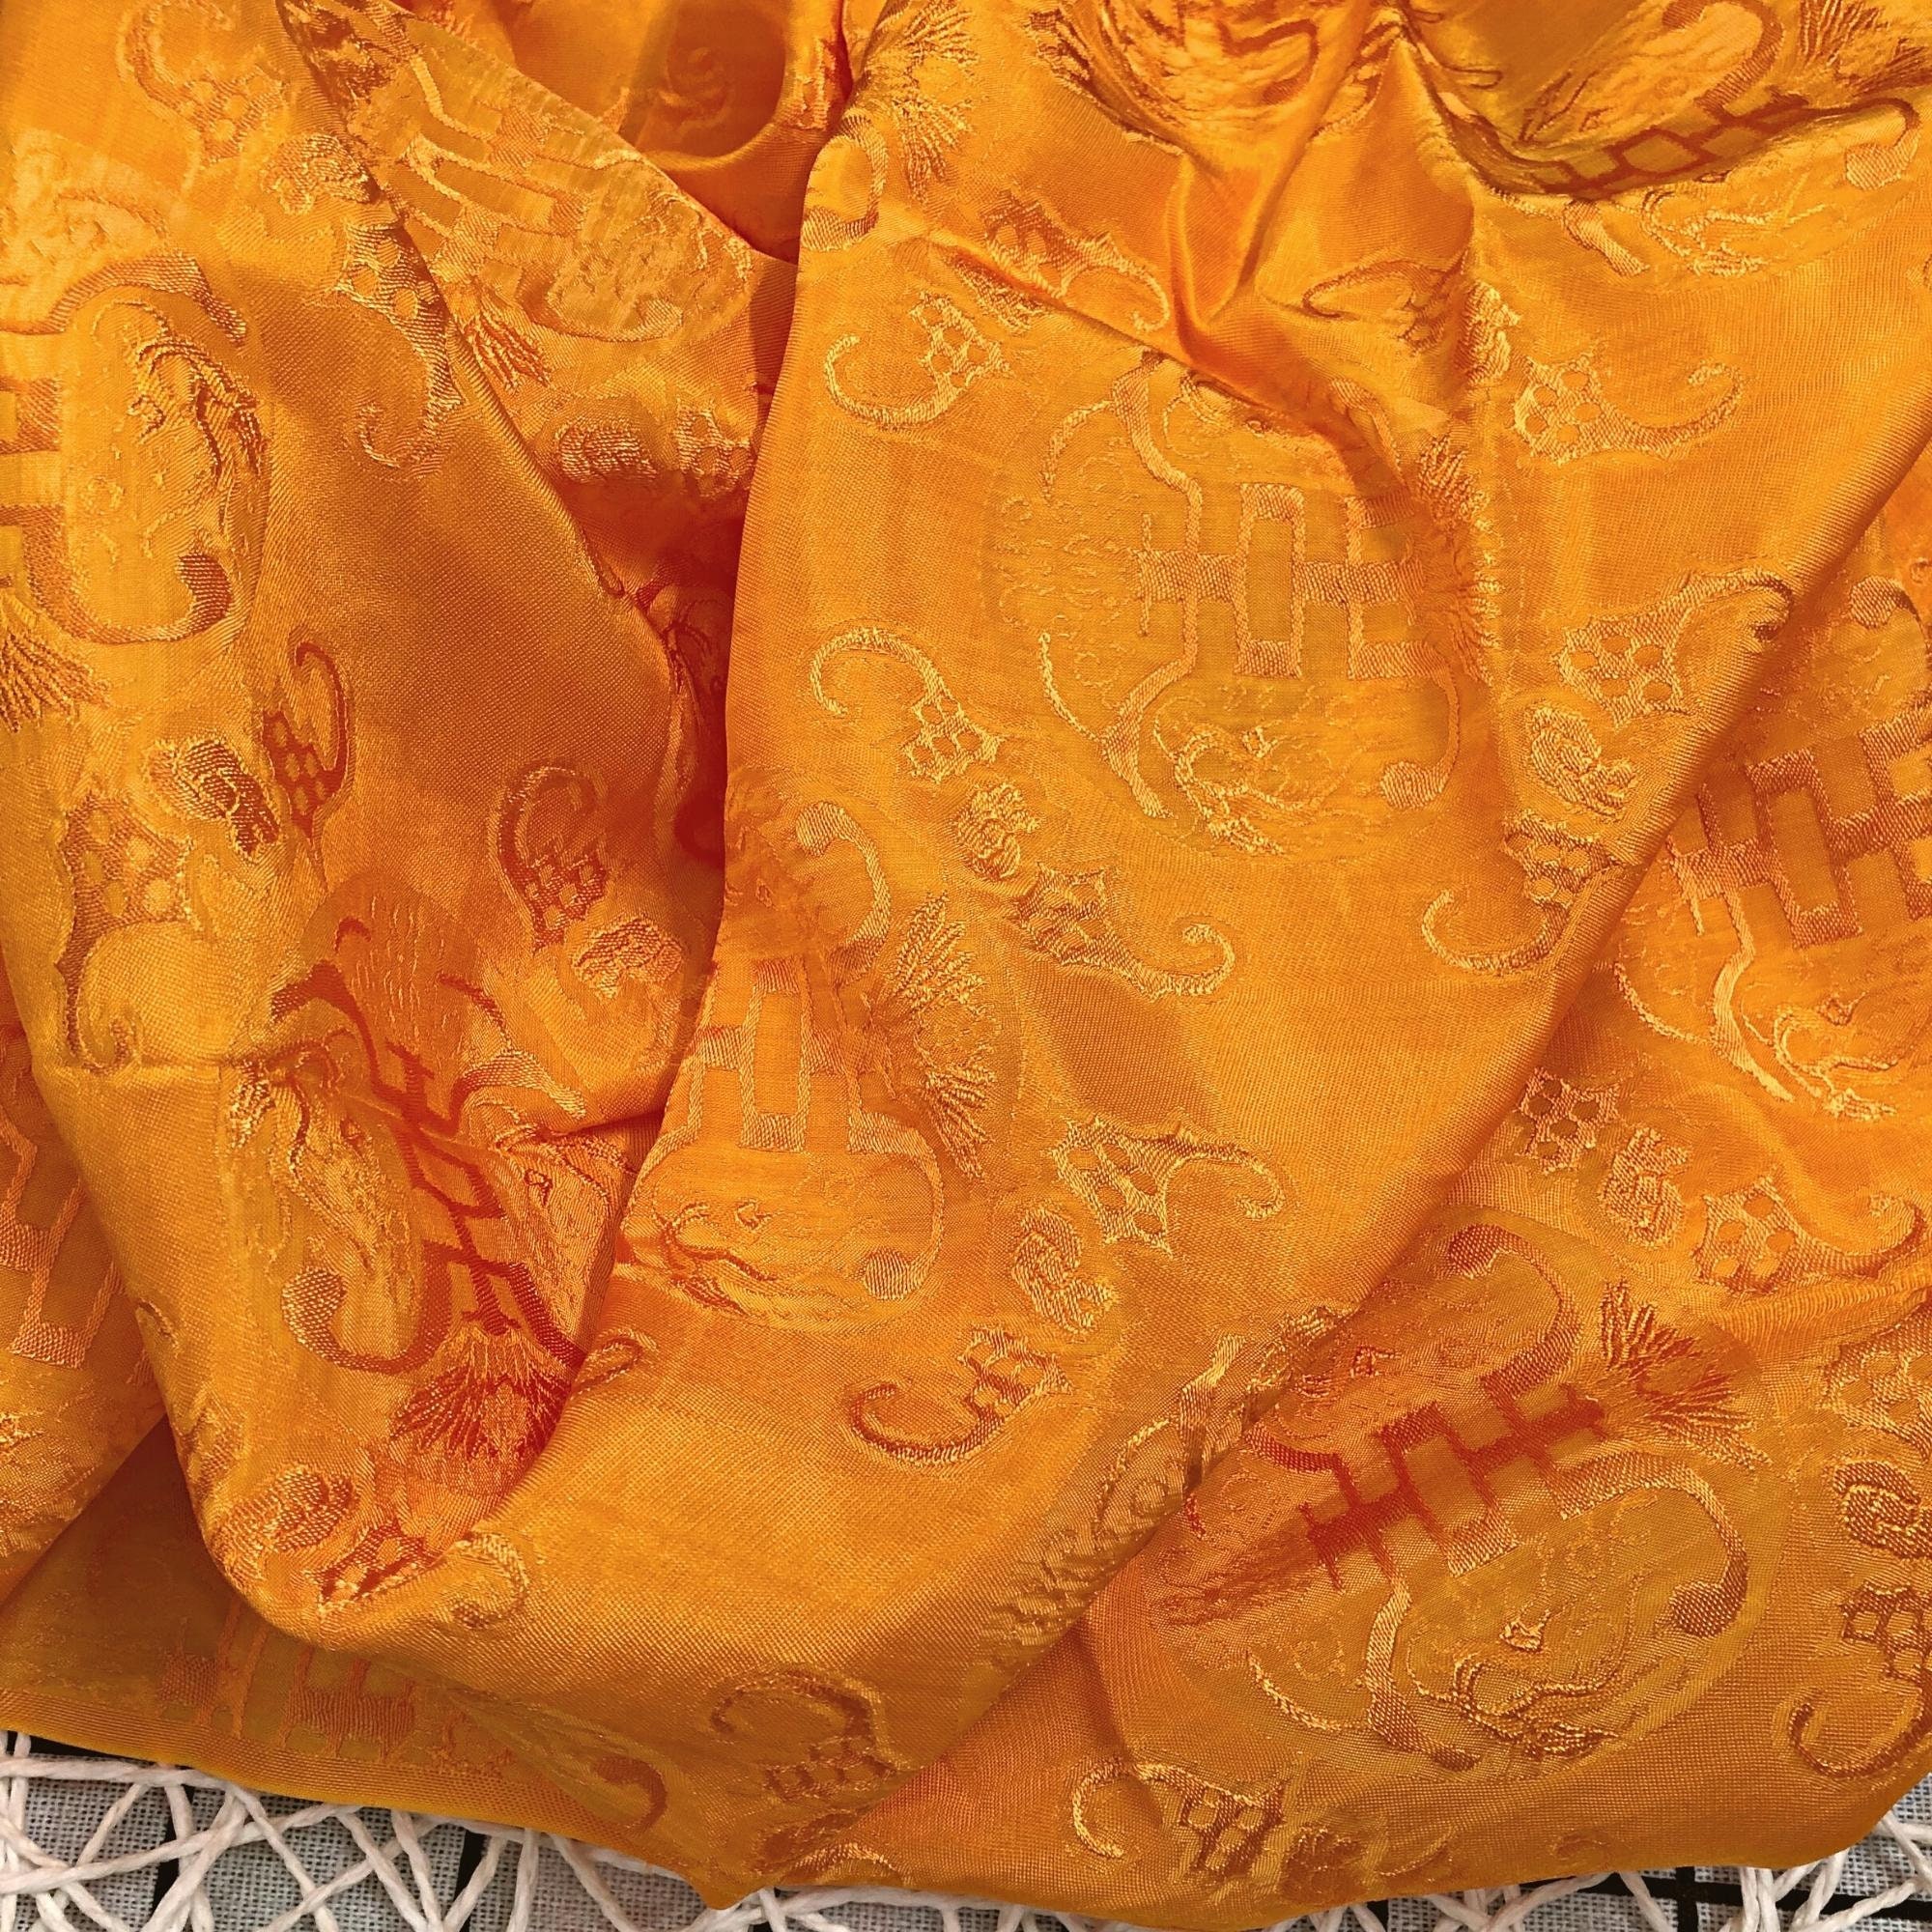 Vải Lụa Tơ Tằm thọ dowimauf vàng cam, mềm#mượt#mịn, dệt thủ công, khổ vải 90cm